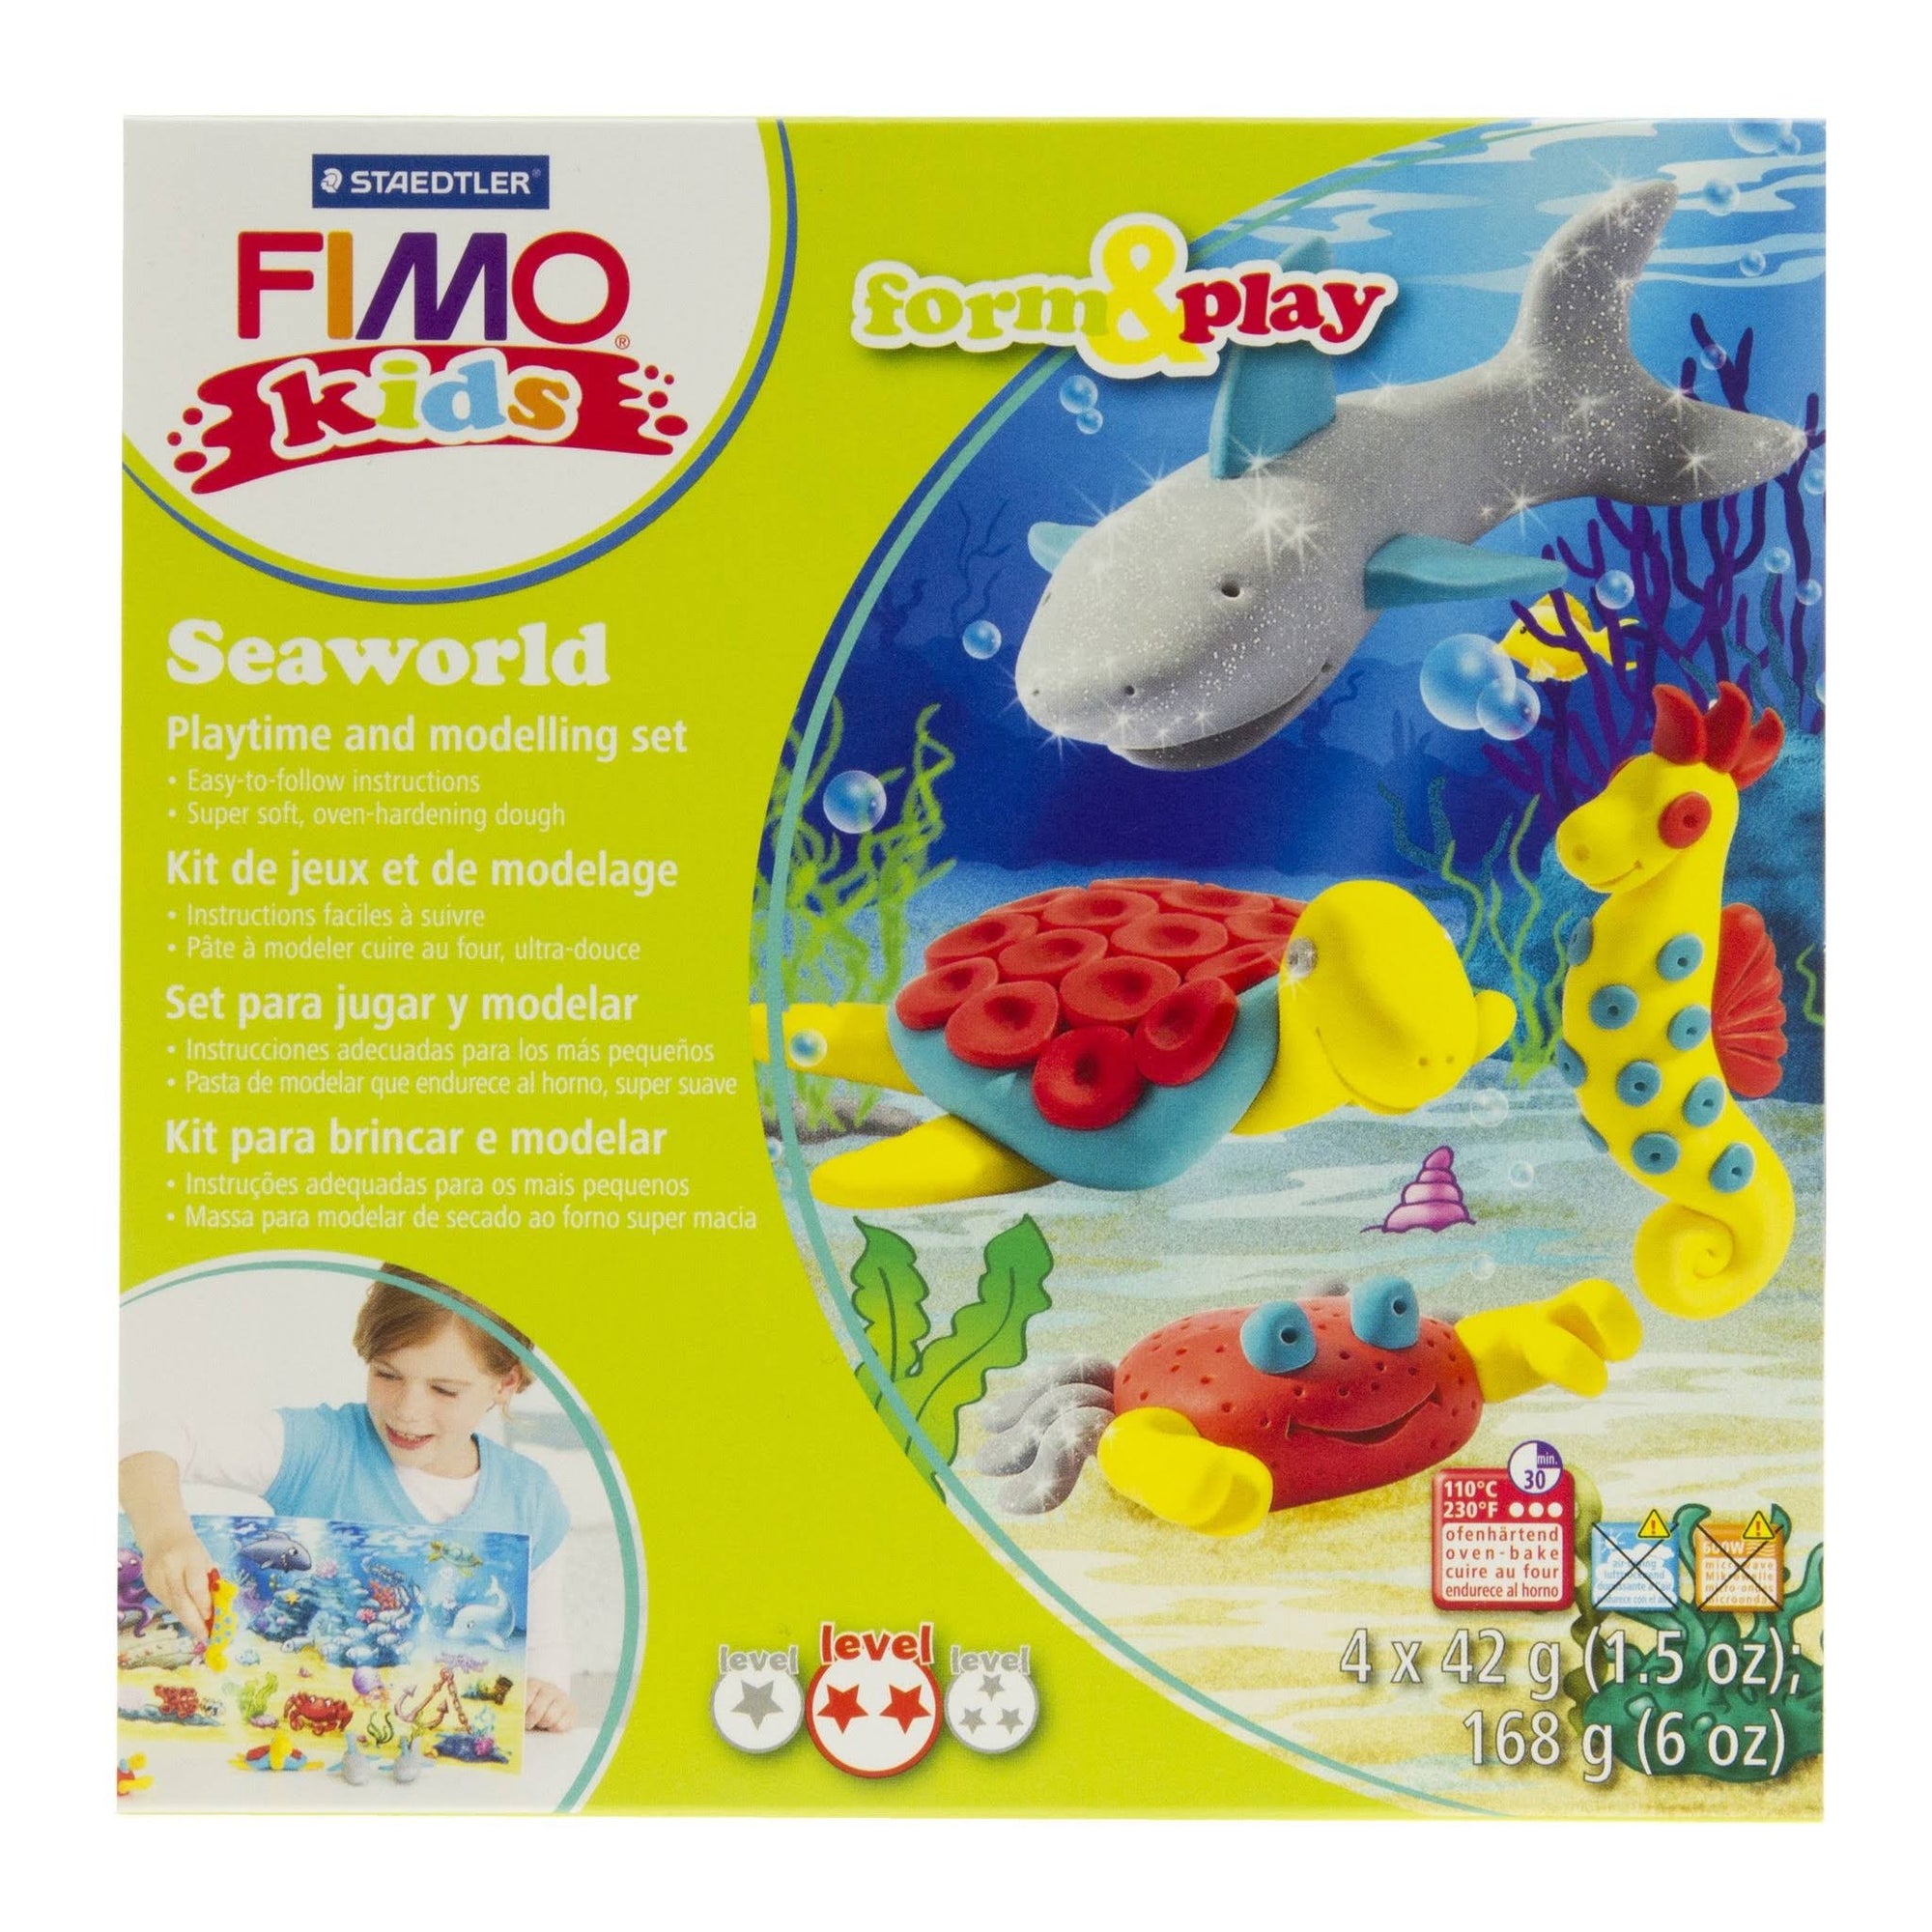 Staedtler Fimo Kids Form & Play Set - Seaworld